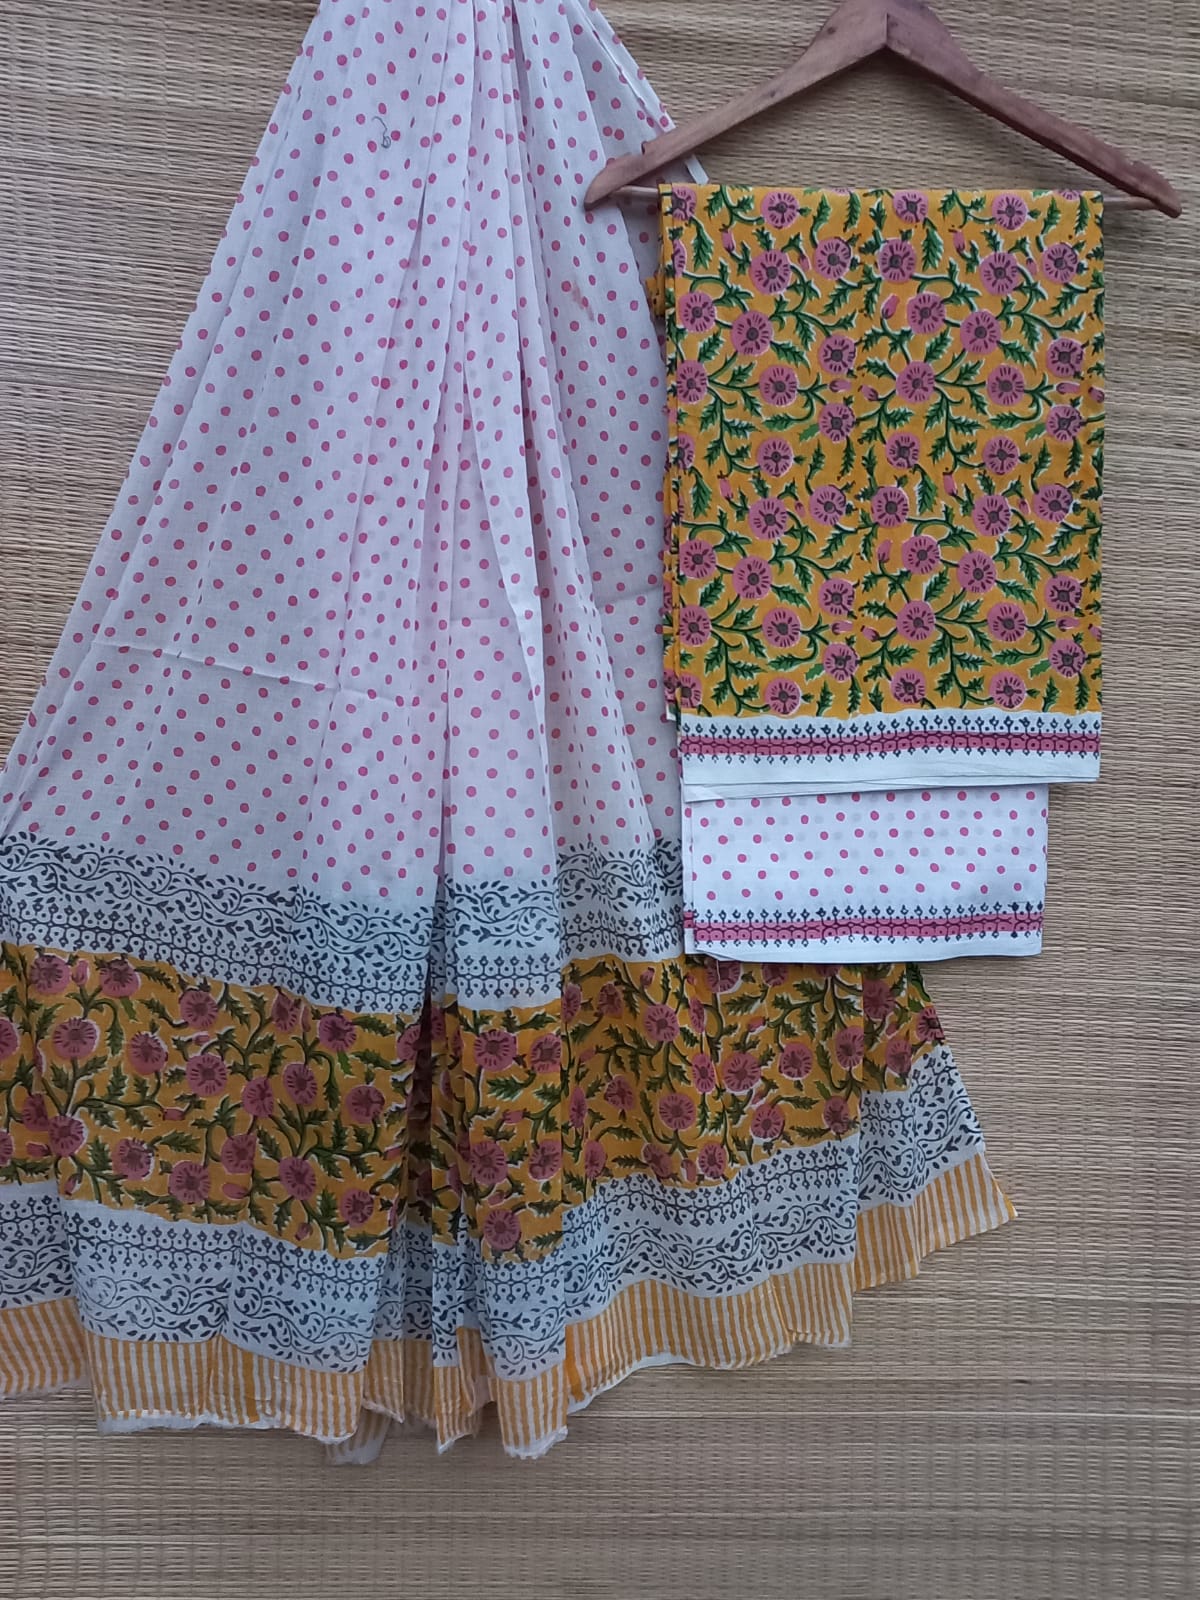 Hand Block Cotton Unstitched Salwar Suit With Cotton/Mulmul Dupatta - JBCM774